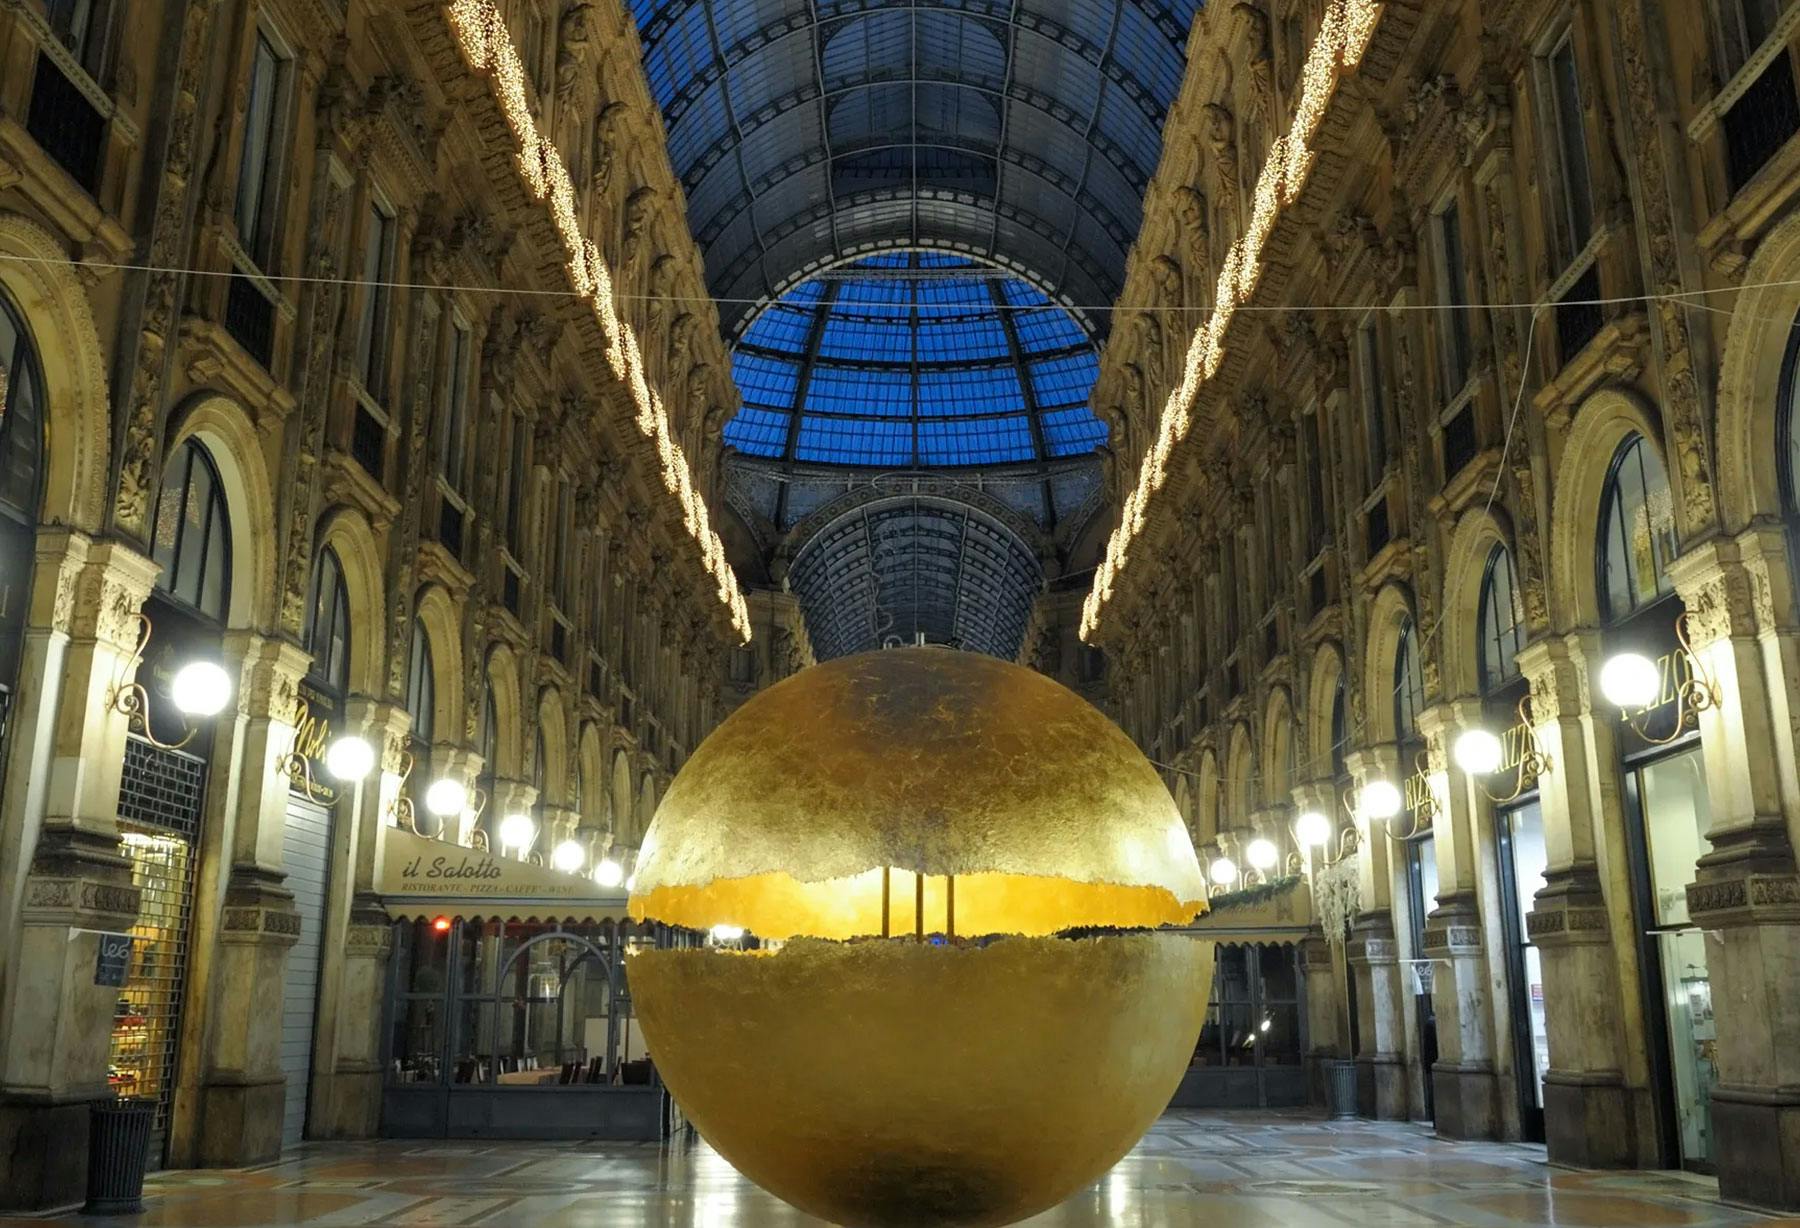 <p>Светокомпозиция «PostKrisi» в галерее Витторио Эмануэле в Милане представляет собой лежащий на земле огромный шар, полностью покрытый фольгой под золото, светящийся, привлекающий внимание, объединяющий в себе ценности прошлого и технологии сегодняшнего дня.</p>
